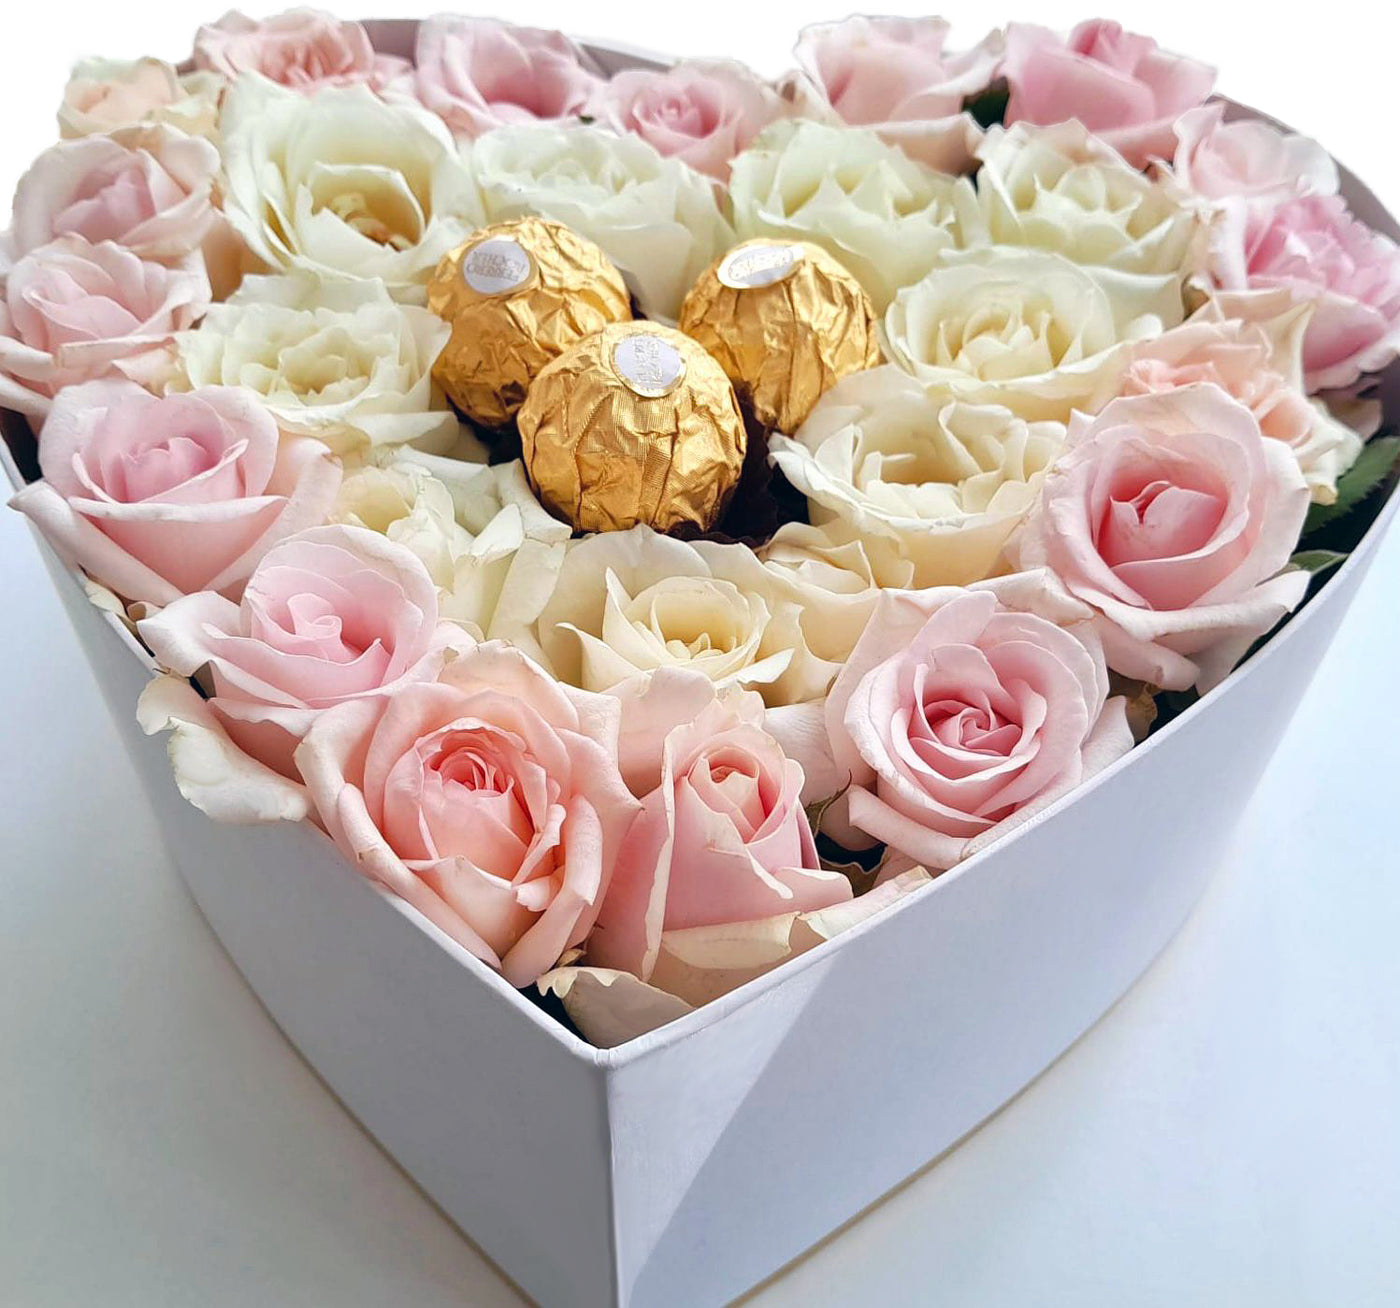 Heart Shape Box - Roses and Ferrero